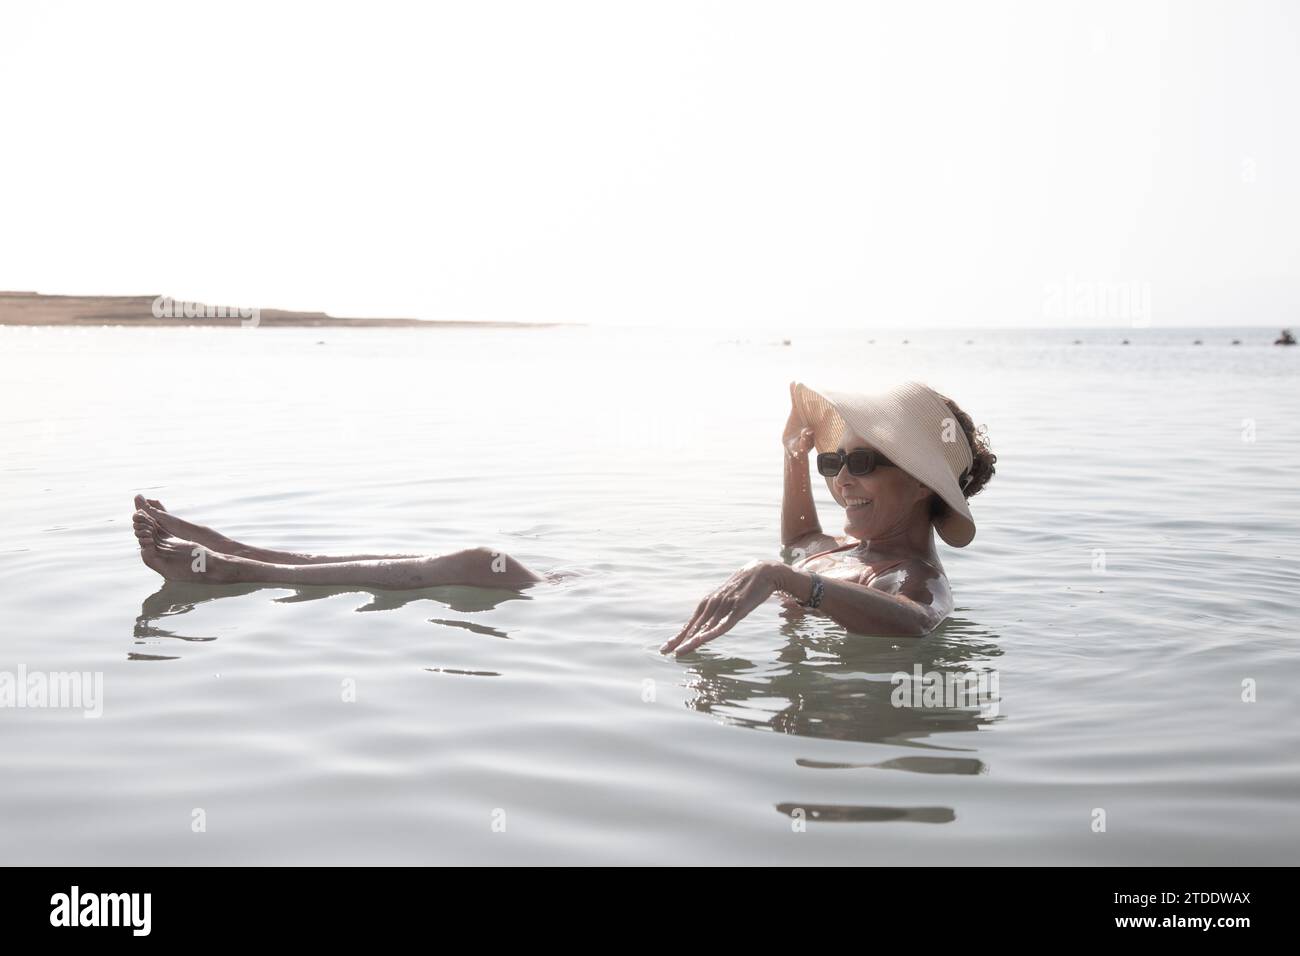 Femme portant un chapeau et des lunettes de soleil, flottant dans la mer Morte Banque D'Images